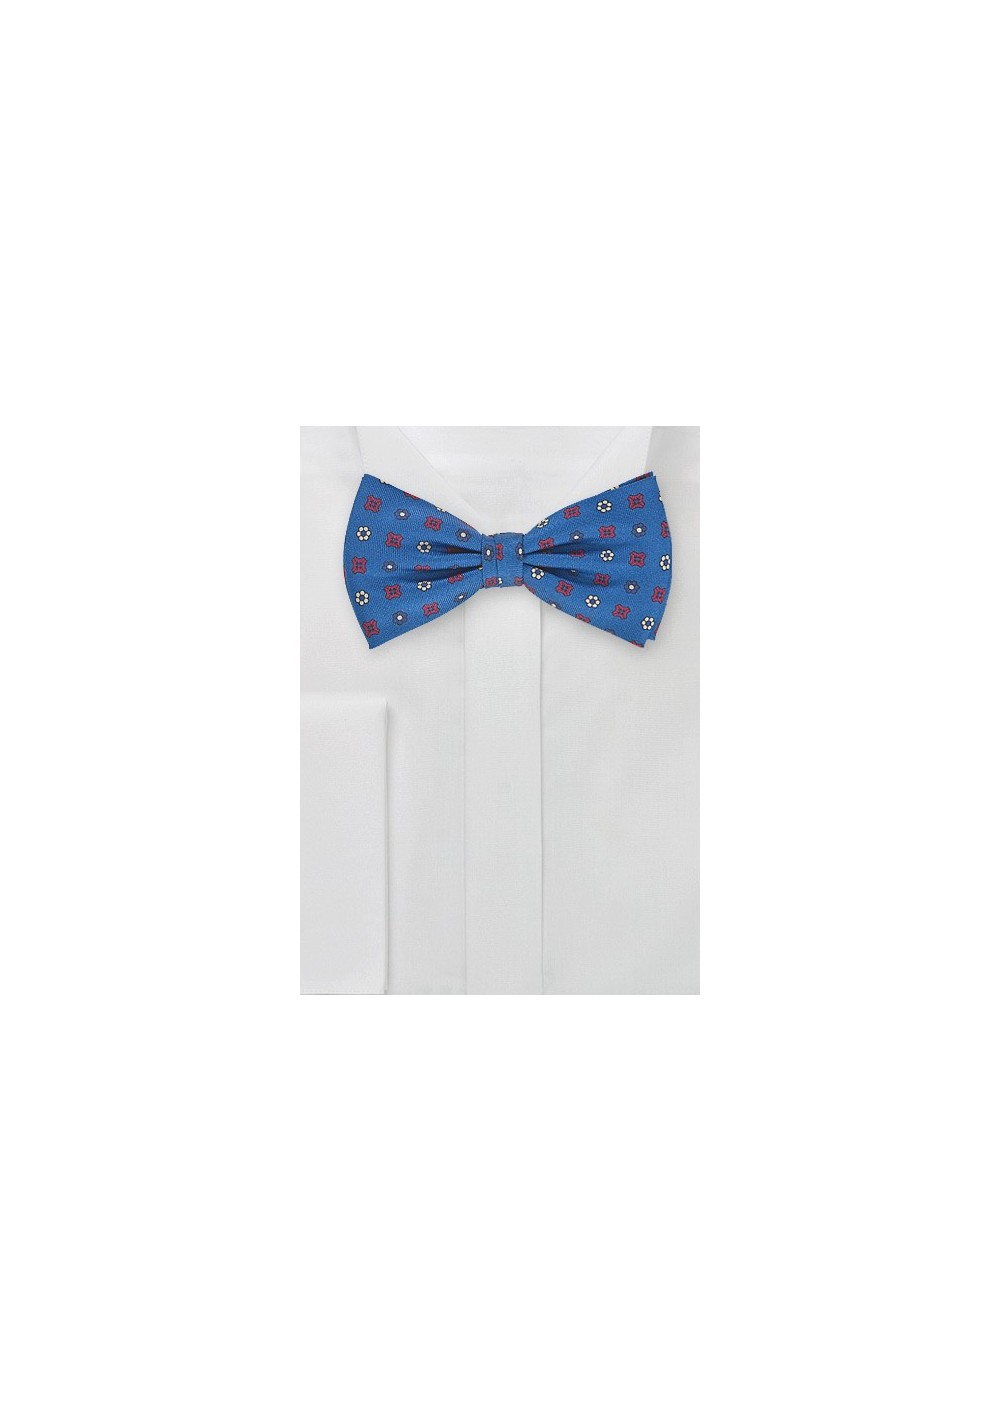 Retro Floral Tie in Victoria Blue